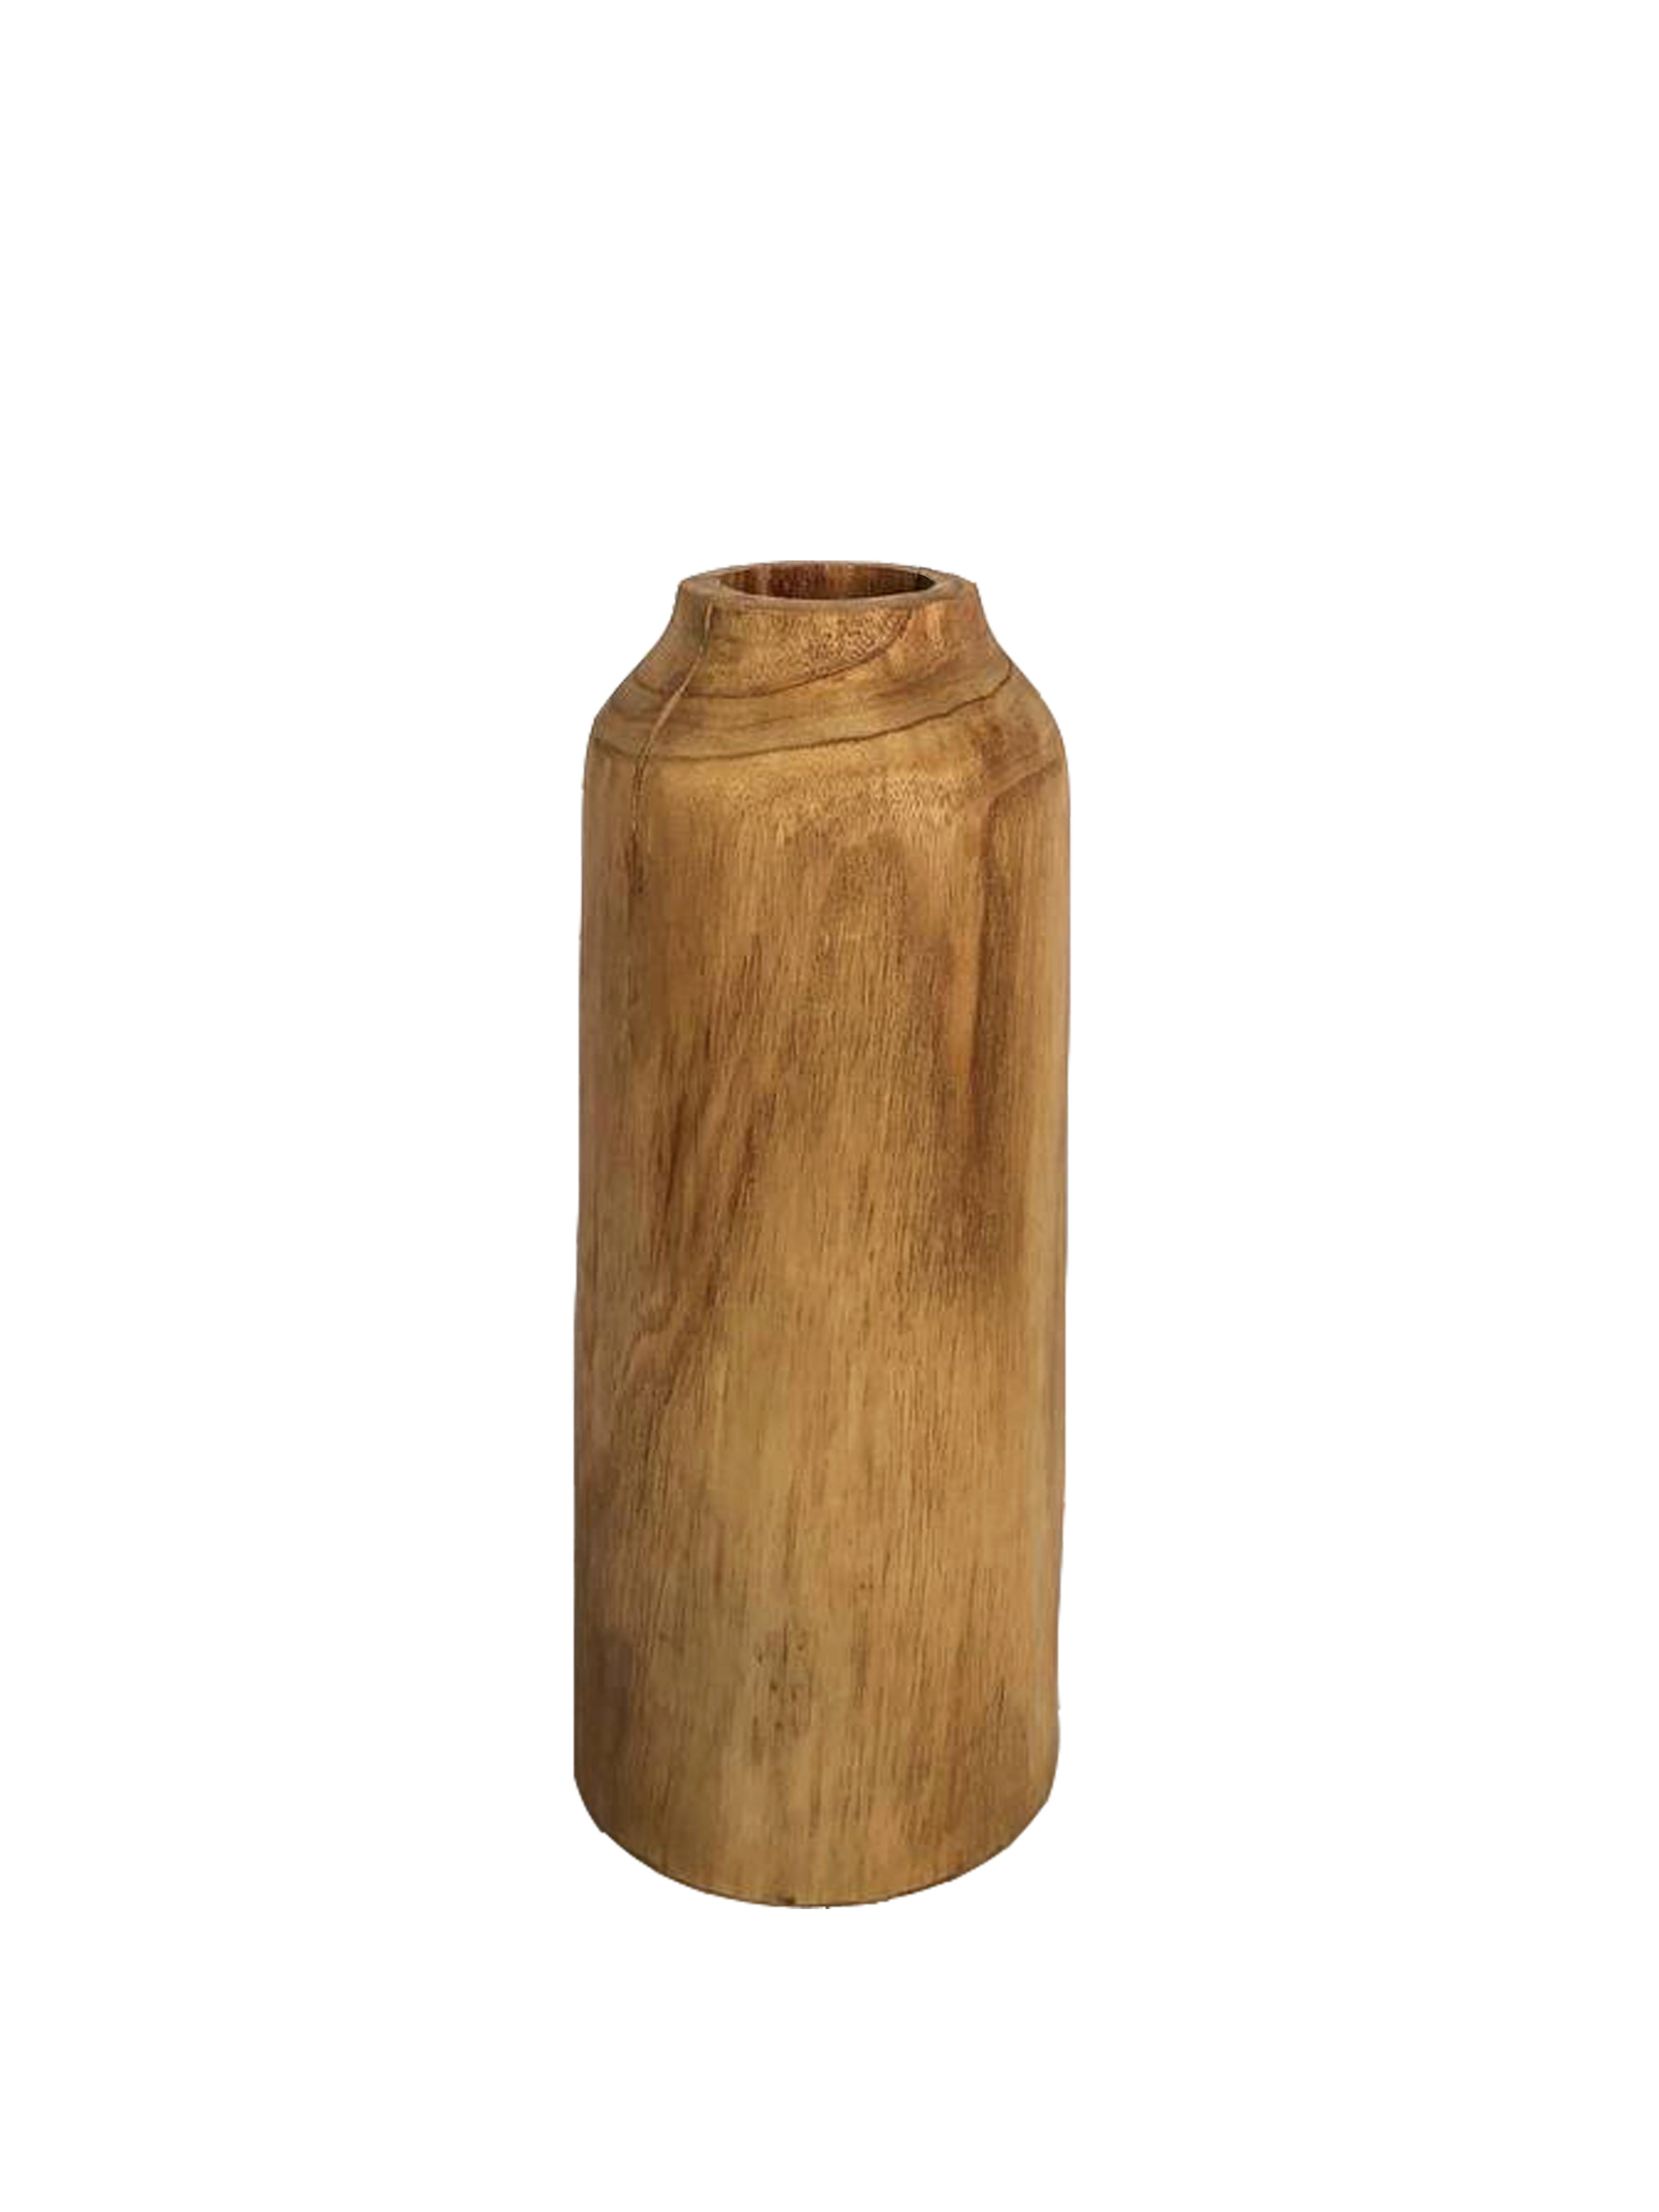 Ambia Home VÁZA, dřevo, plast, 25 cm - přírodní barvy - dřevo mindi